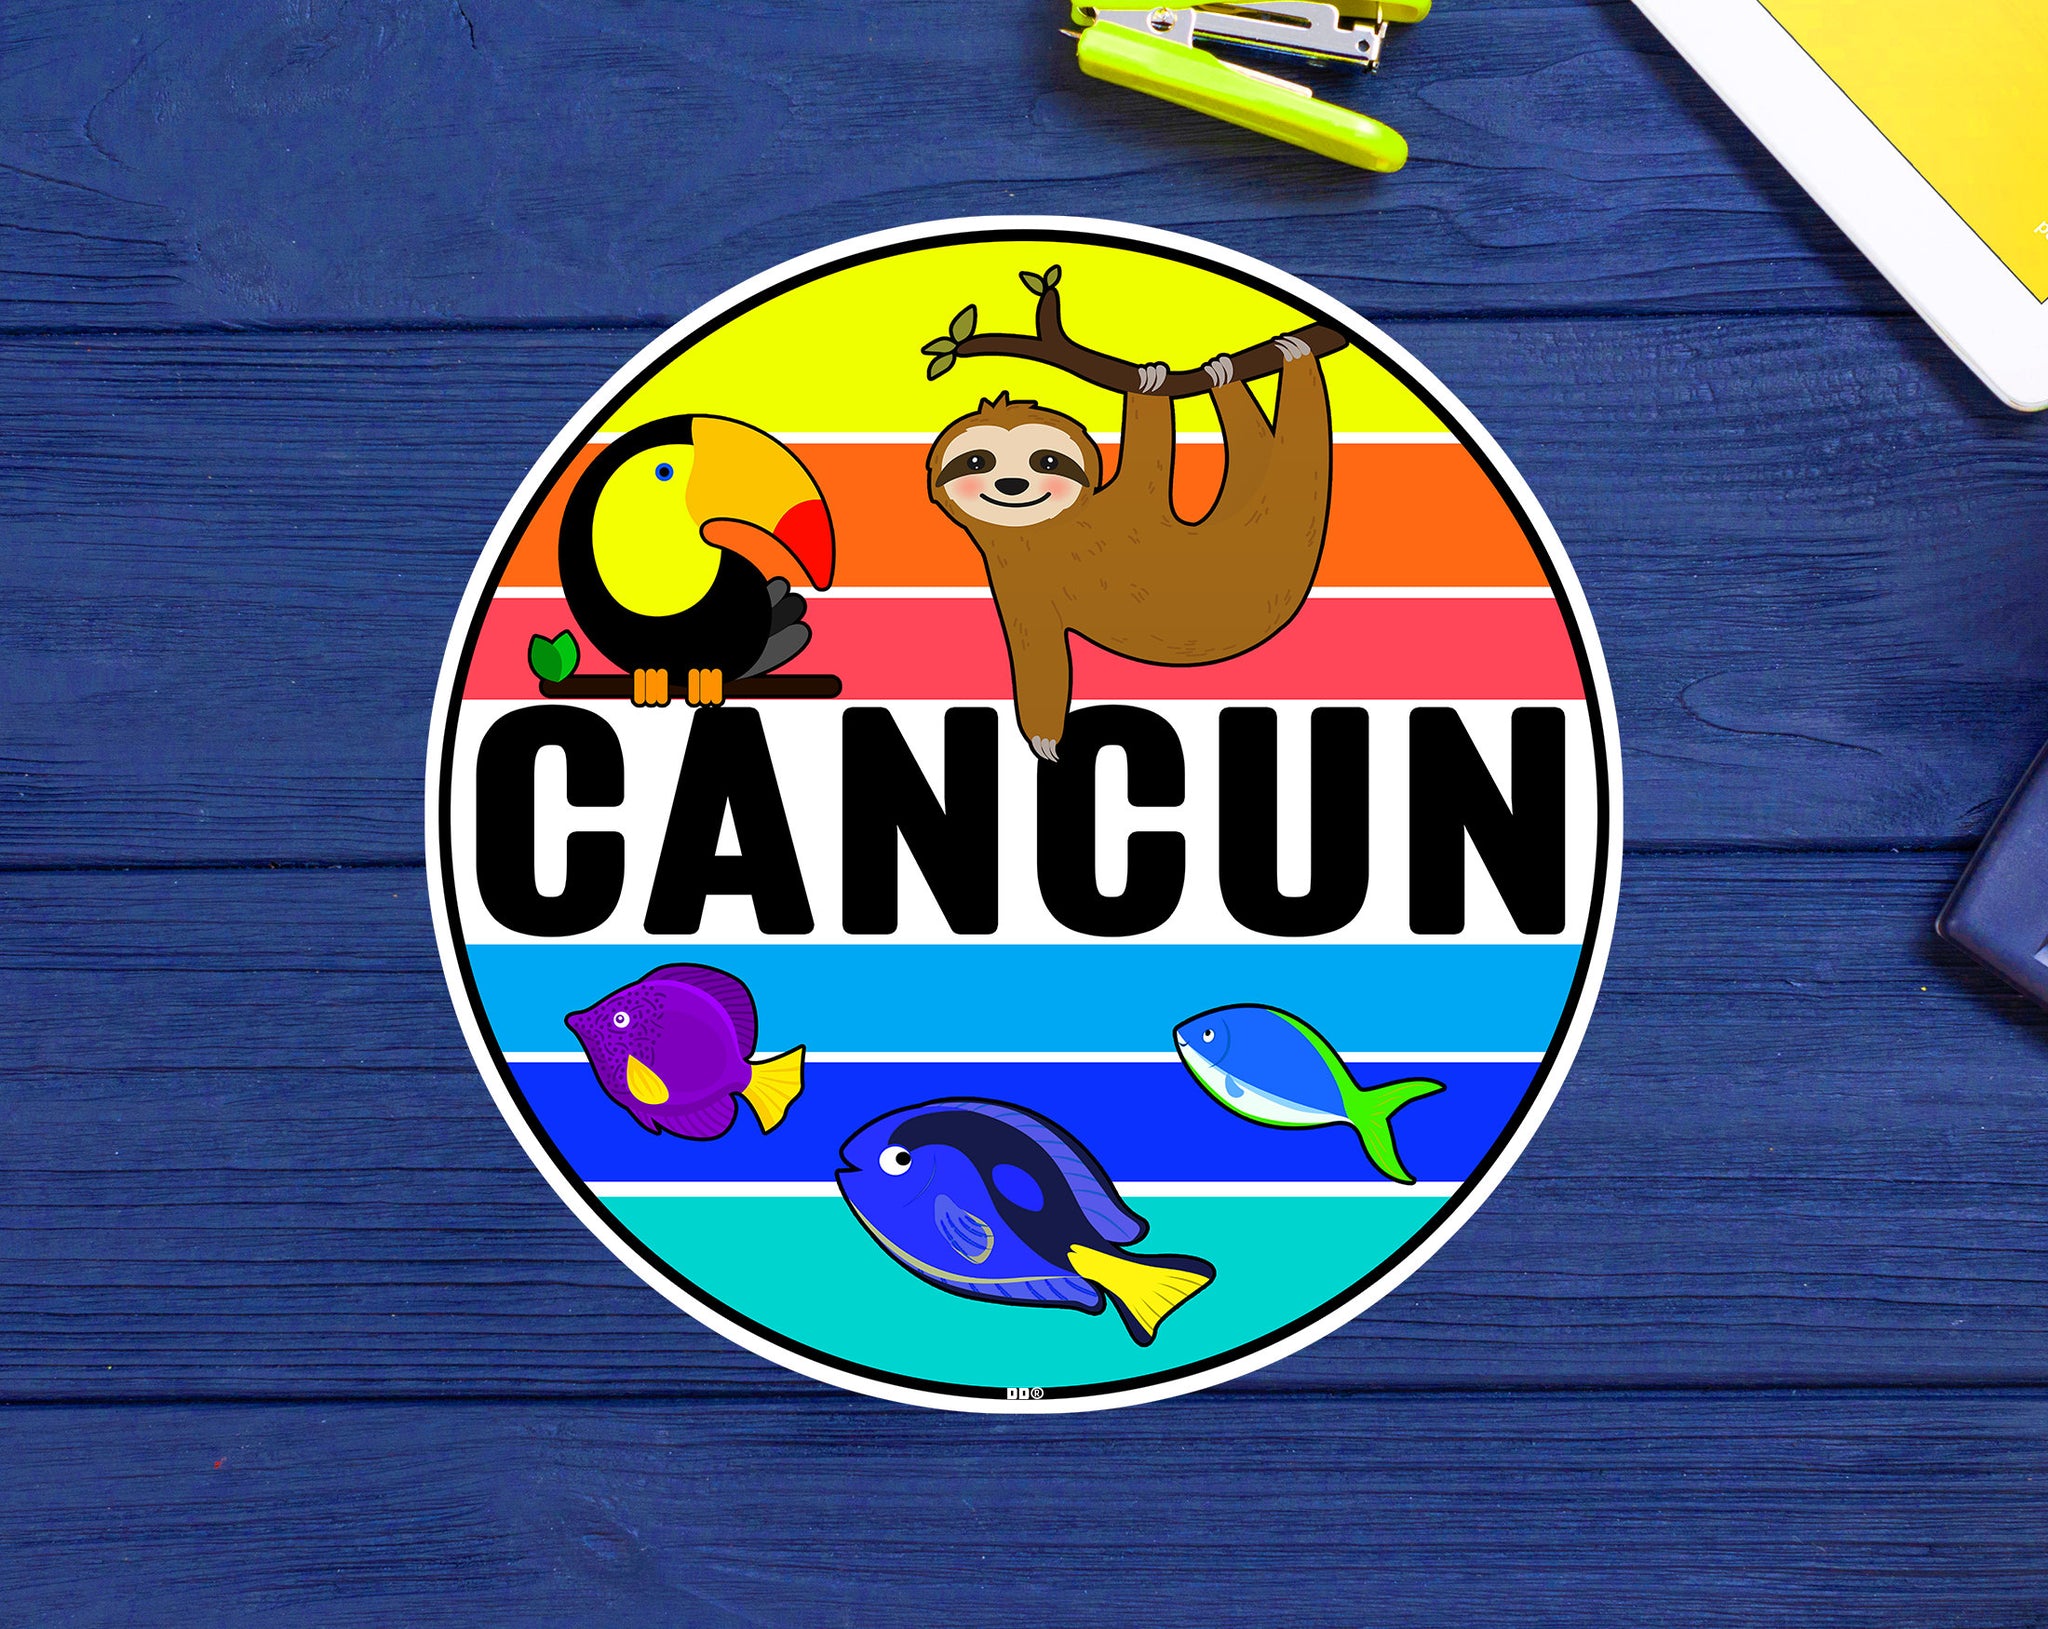 Cancun Mexico Sticker Decal Vinyl Tropical 3" Toucan Sloth Beach Souvenir